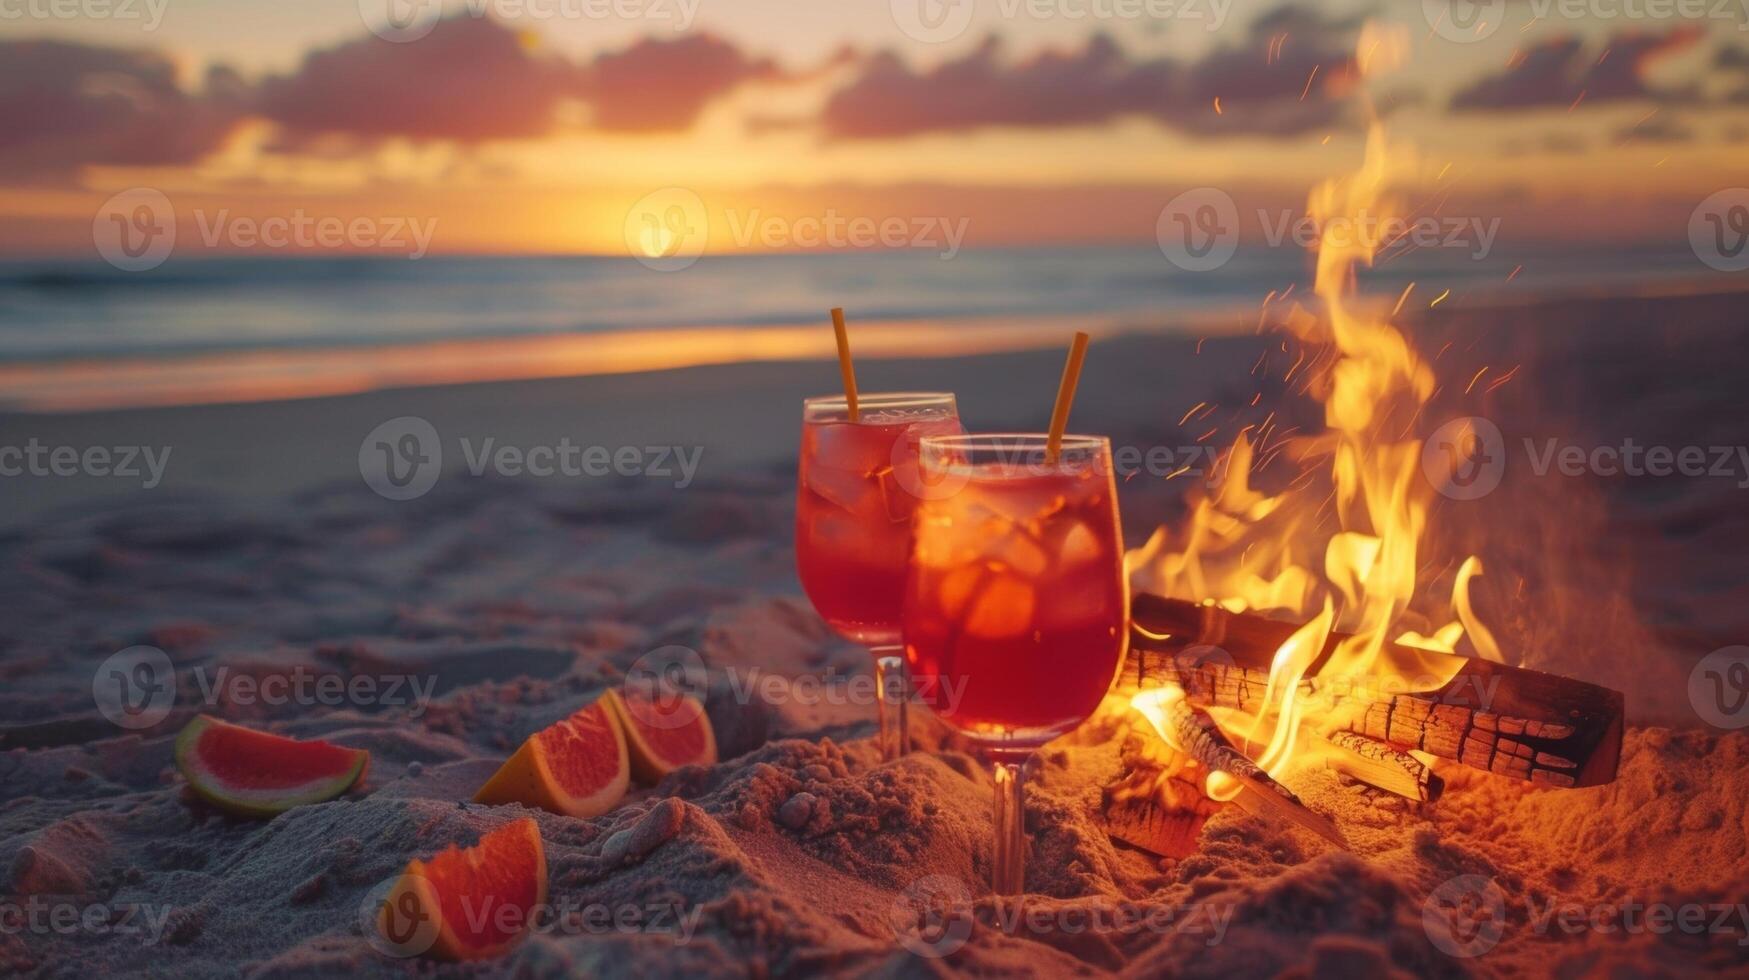 un playa hoguera fiesta en un calentar verano noche completar con refrescante Fruta puñetazo cócteles sin alcohol y un castillo de arena edificio concurso foto